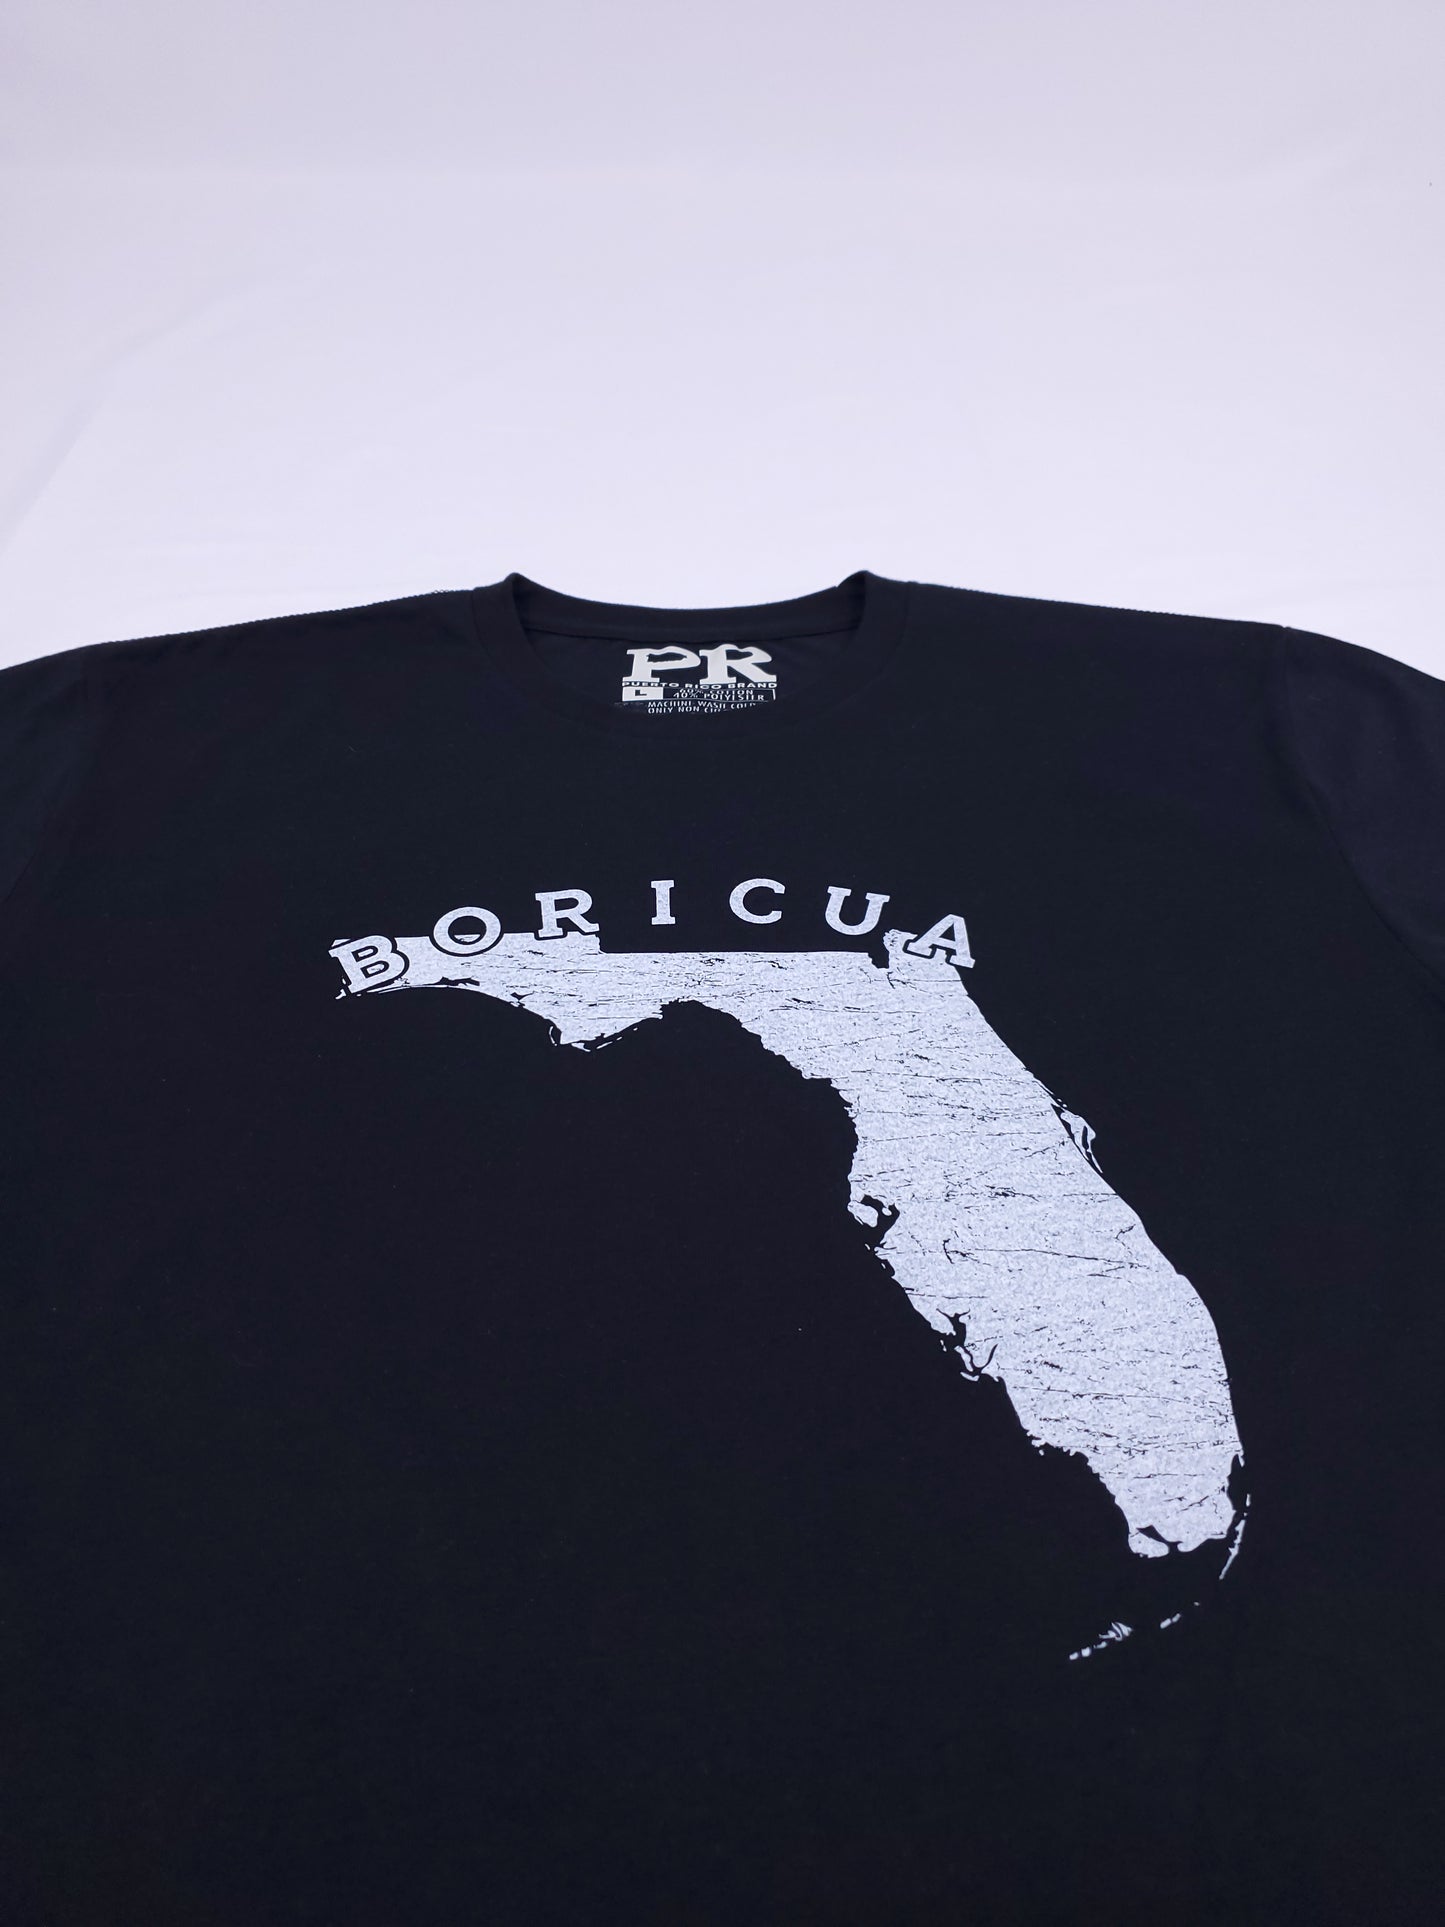 Boricua - Florida